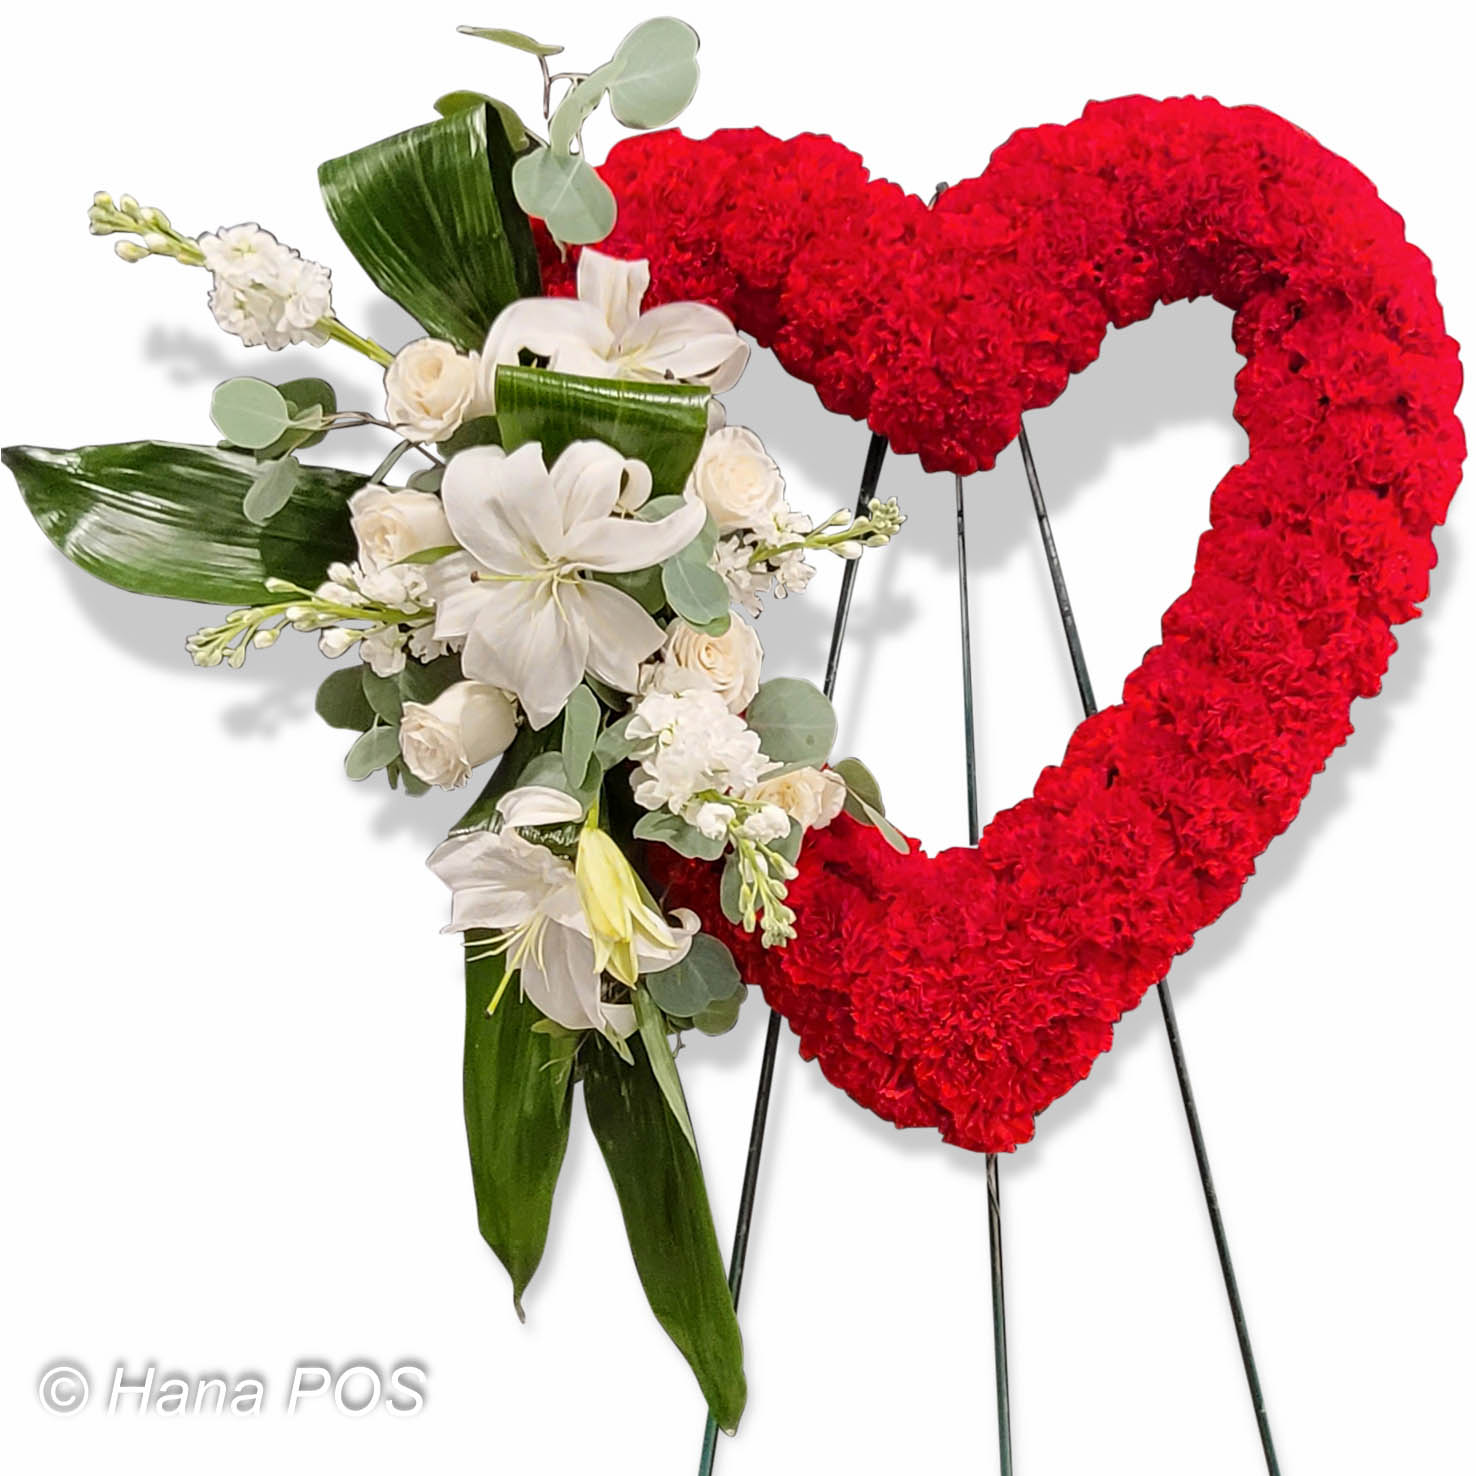 Red Heart Flower Bouquet